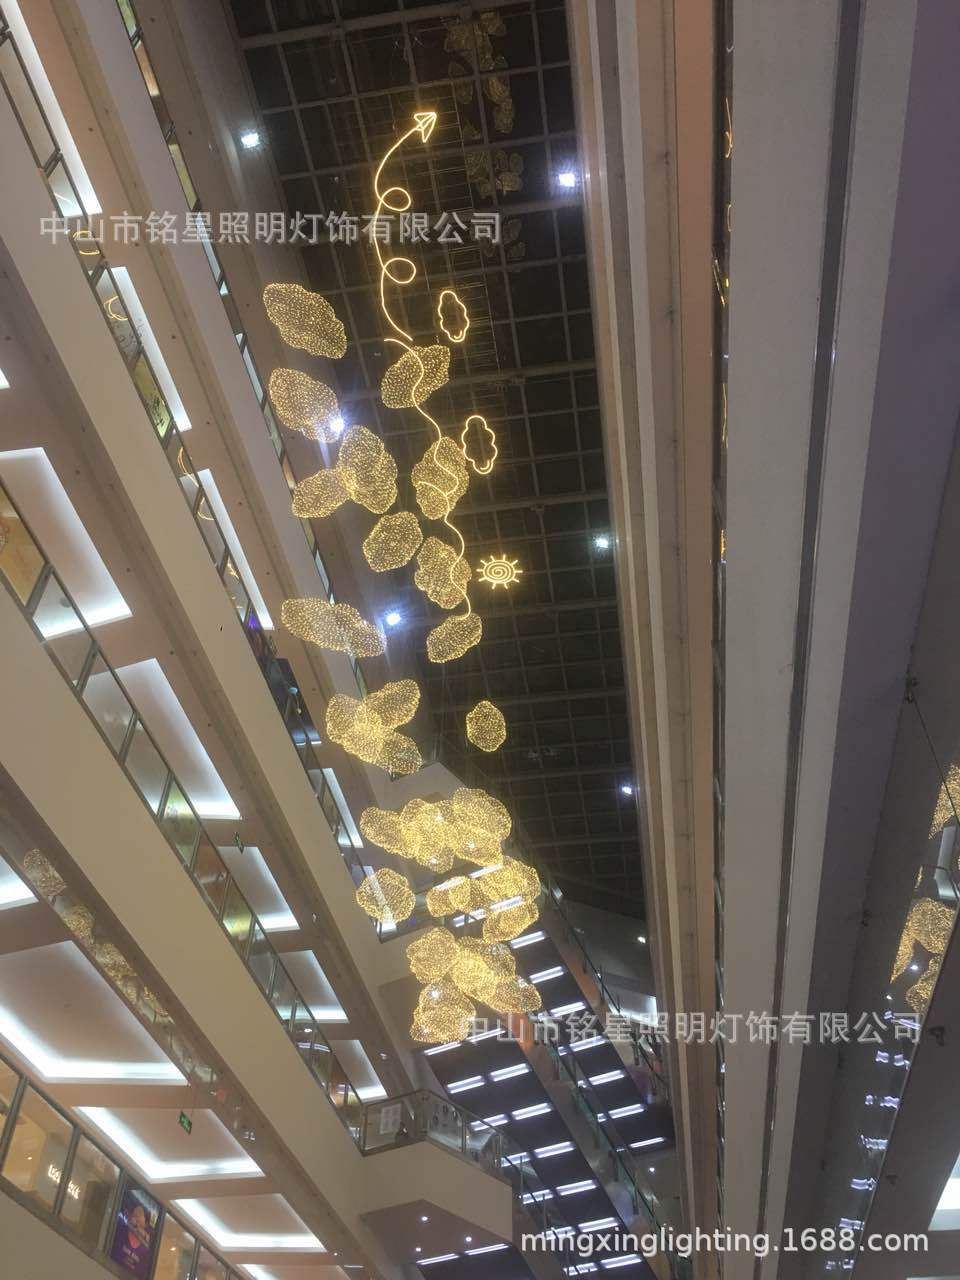 中国供应商铭星照明灯饰有限公司全新LED云朵满天星专业生产厂家示例图9